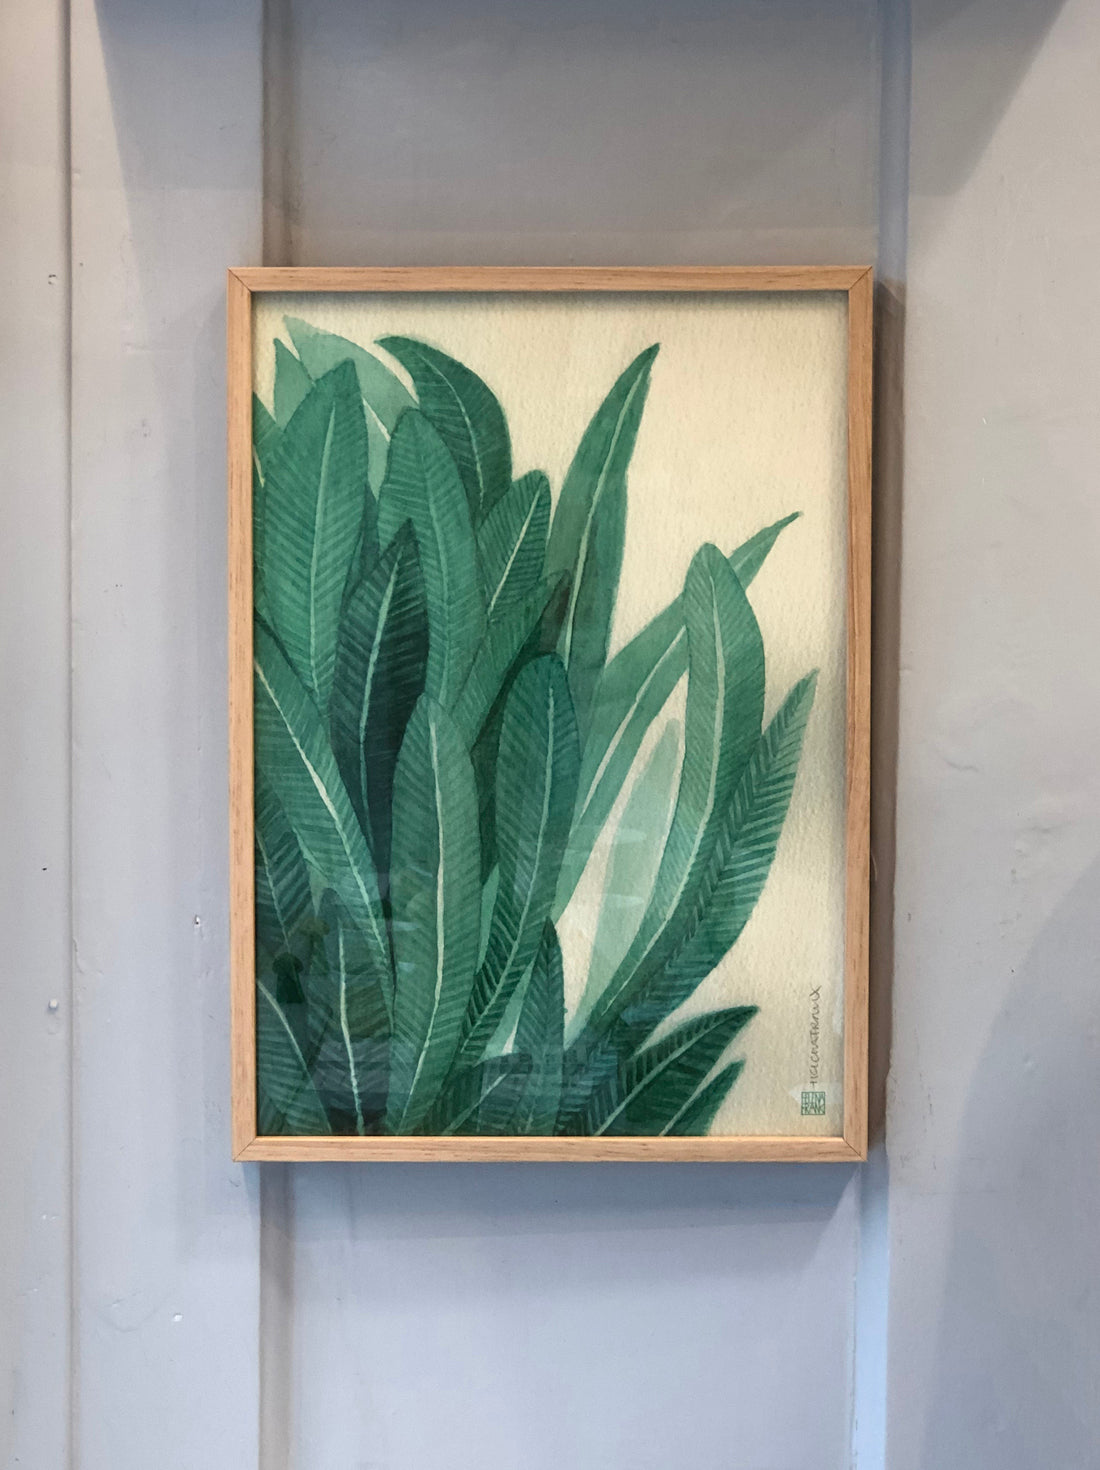 Leaves artprint in frame